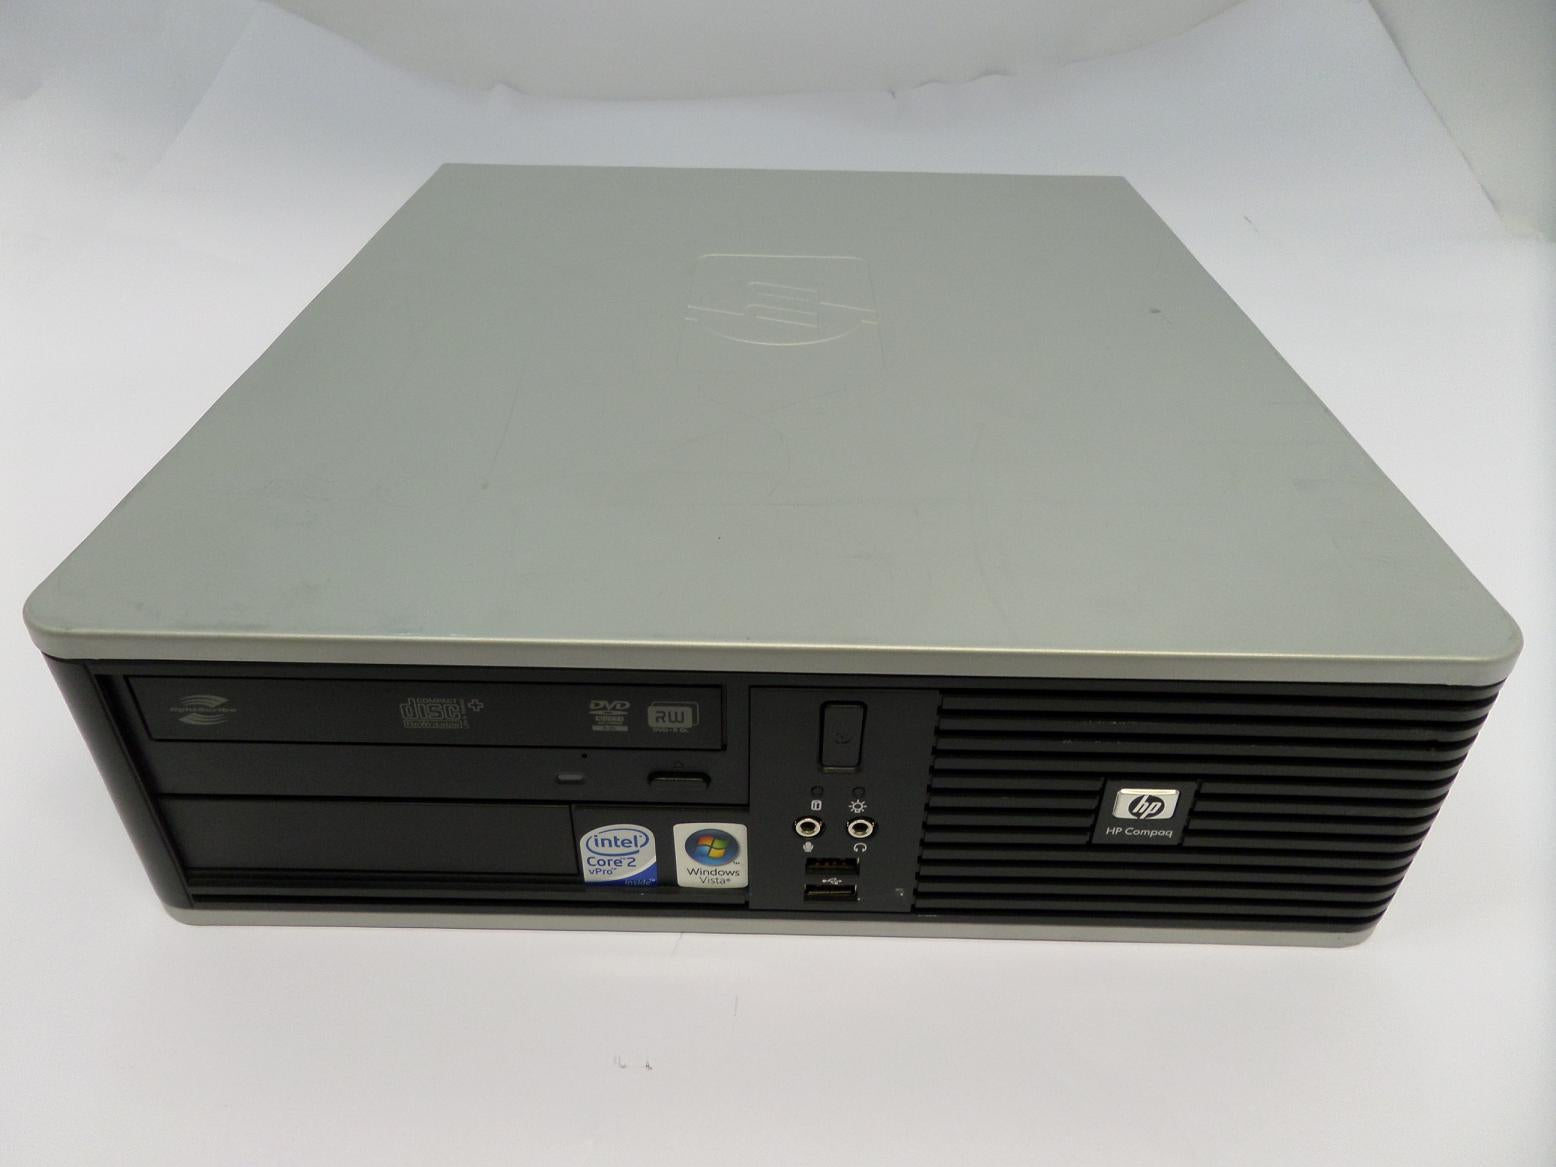 KB930ET#ABU - HP Compaq dc7800p Intel Core 2 Duo 2.66GHz 2Gb RAM DVD/RW SFF Desktop - No HDD - USED